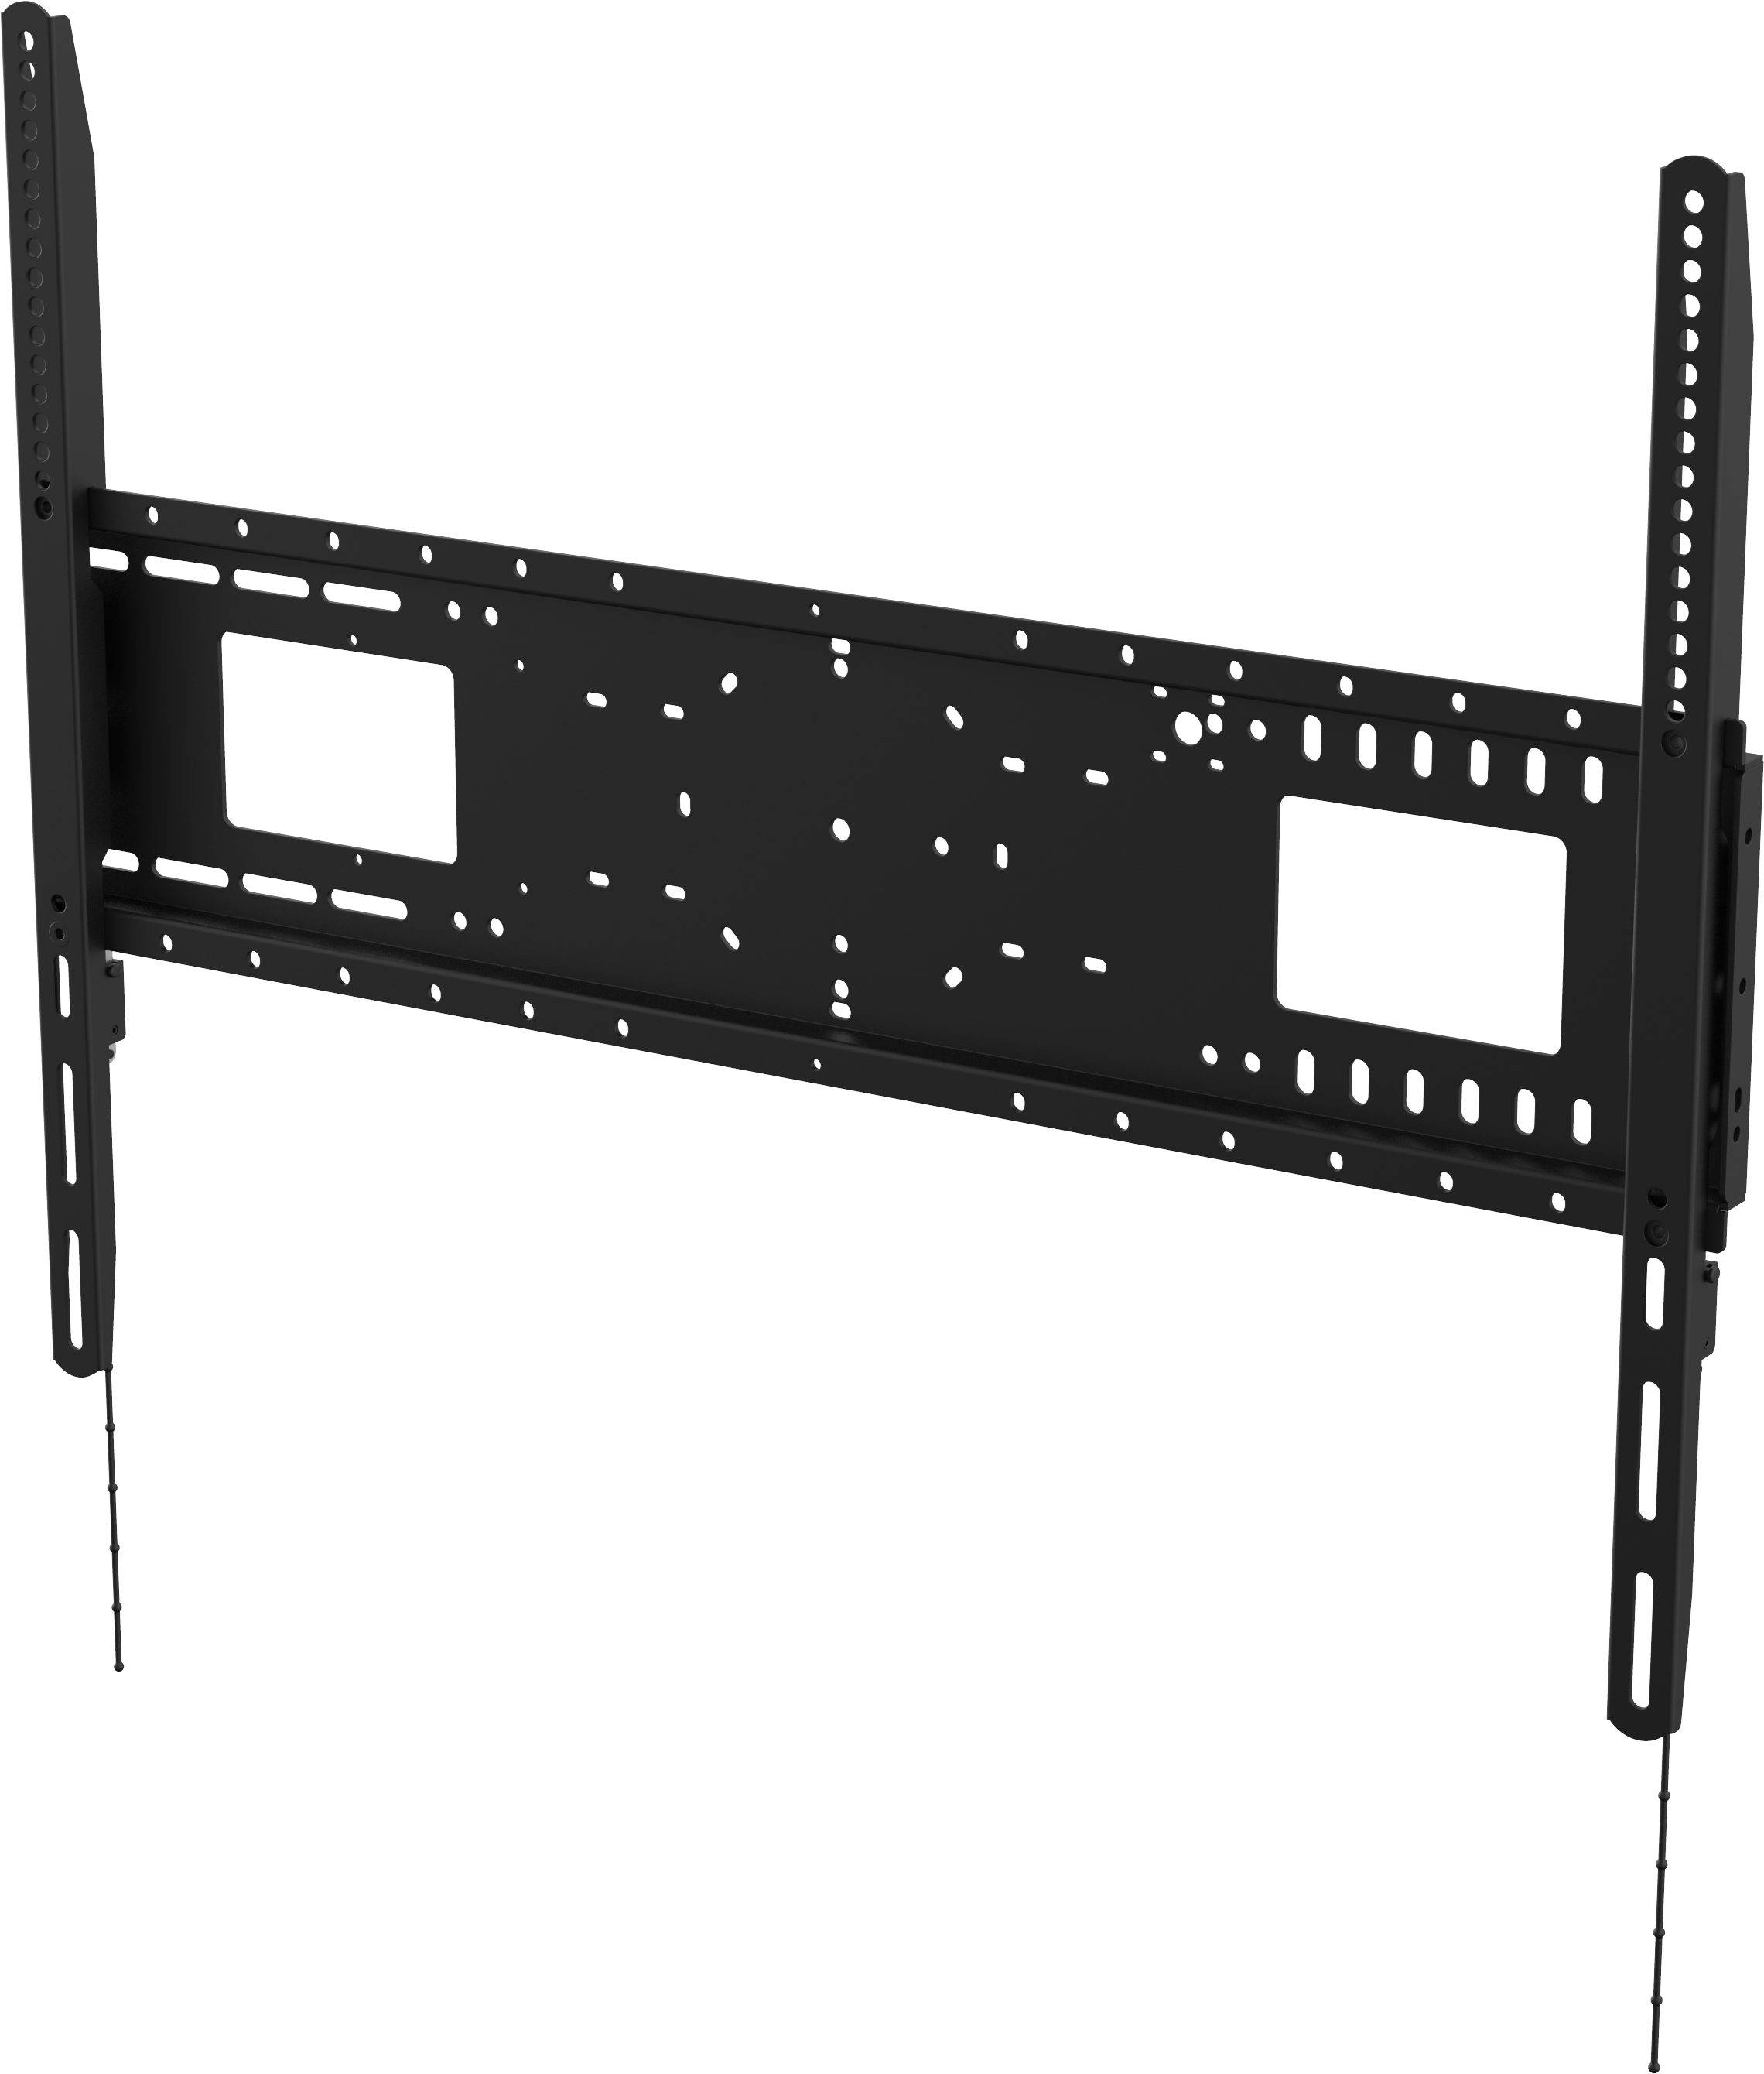 An image showing Sistema di montaggio a parete per schermi piatti per carichi pesanti 800 × 600